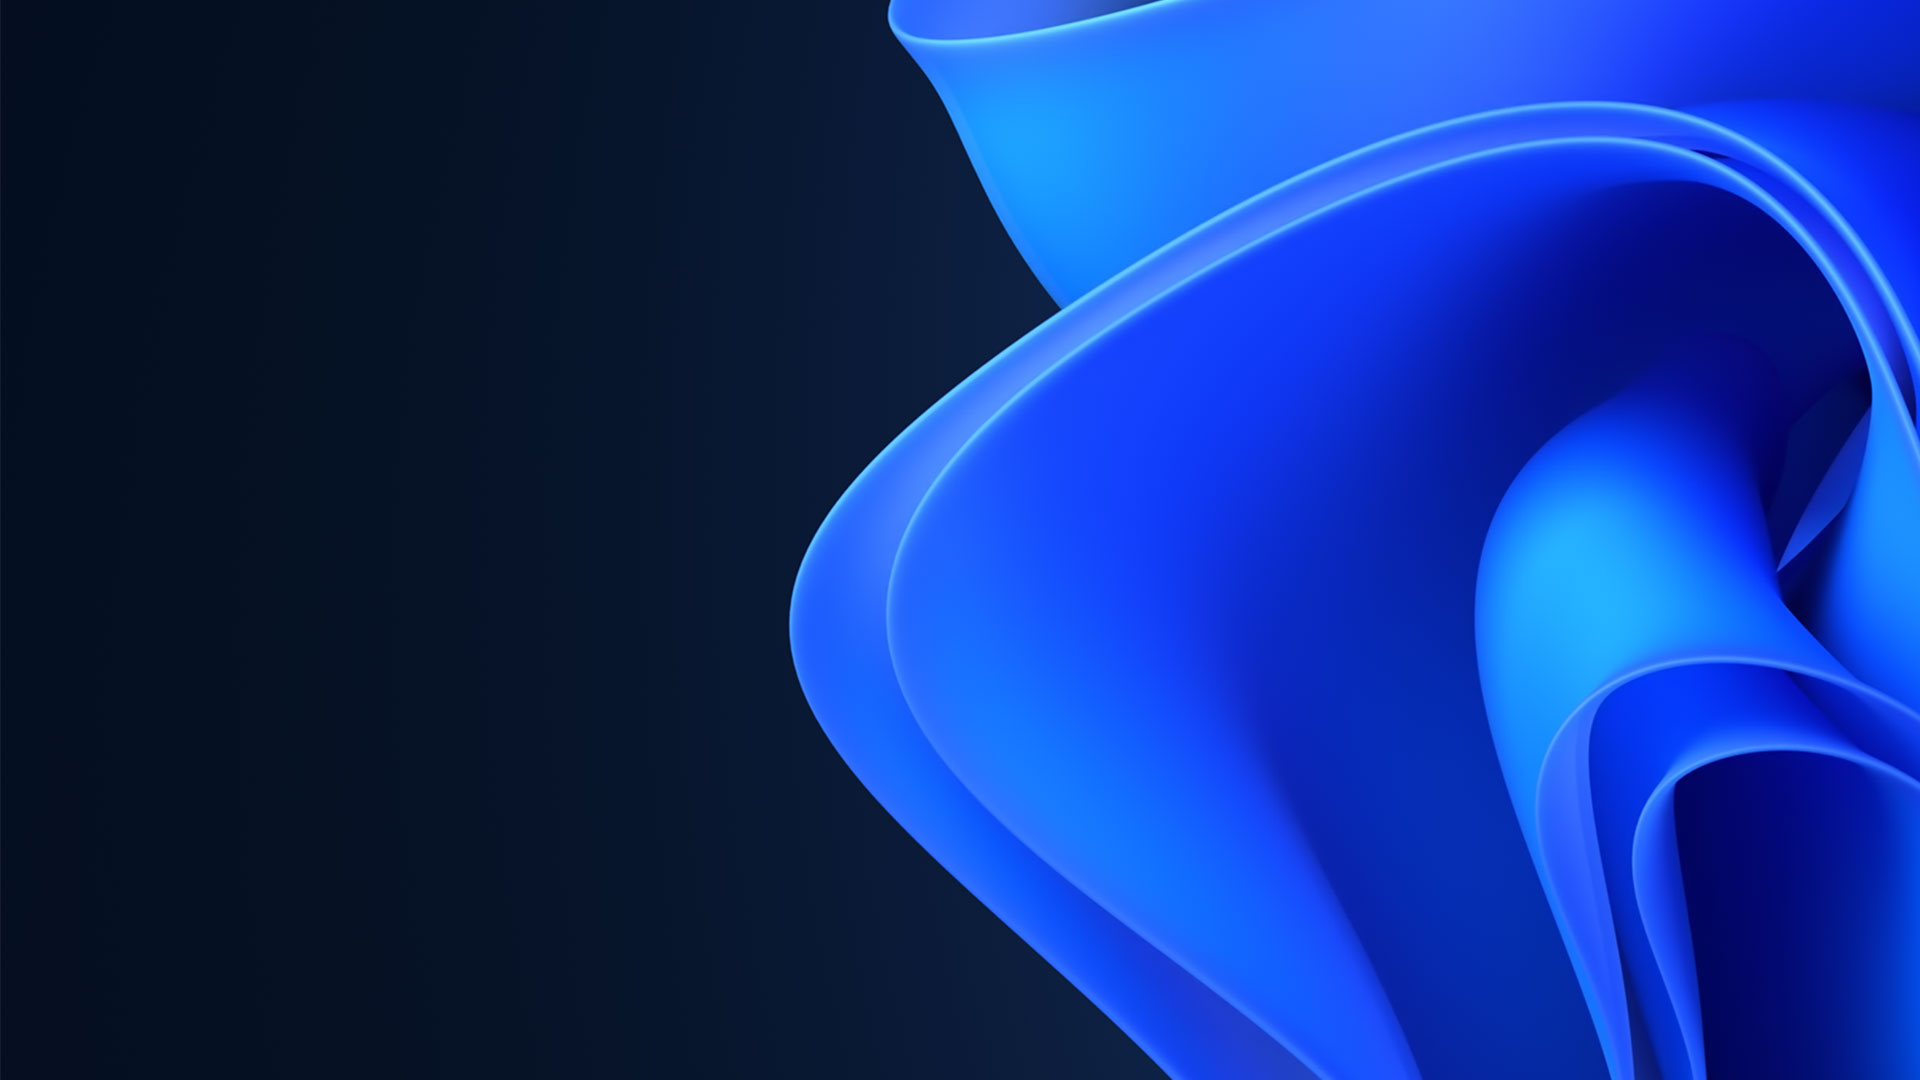  Windows 11 파란 리본 모양 꽃 로고